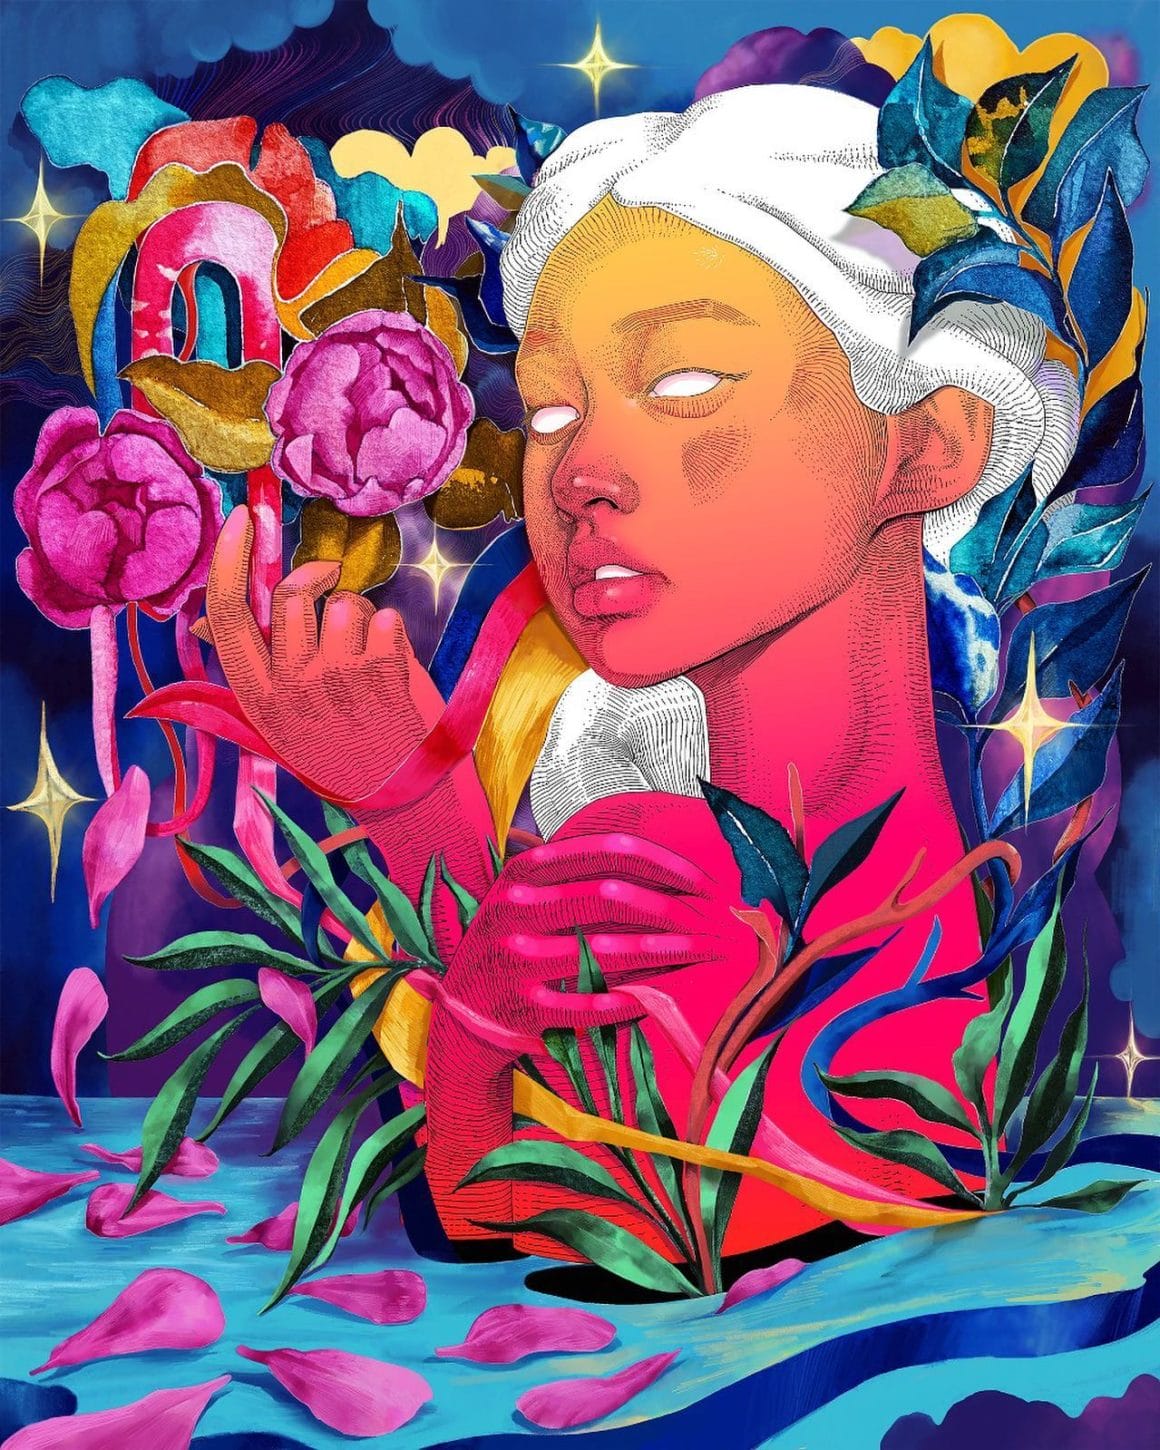 Oeuvre virtuelle représentant une femme à la peau rose orangée et à la chevelure blanche. Elle est dans une forêt de roses, de feuillages et d'étoiles en tous genres.